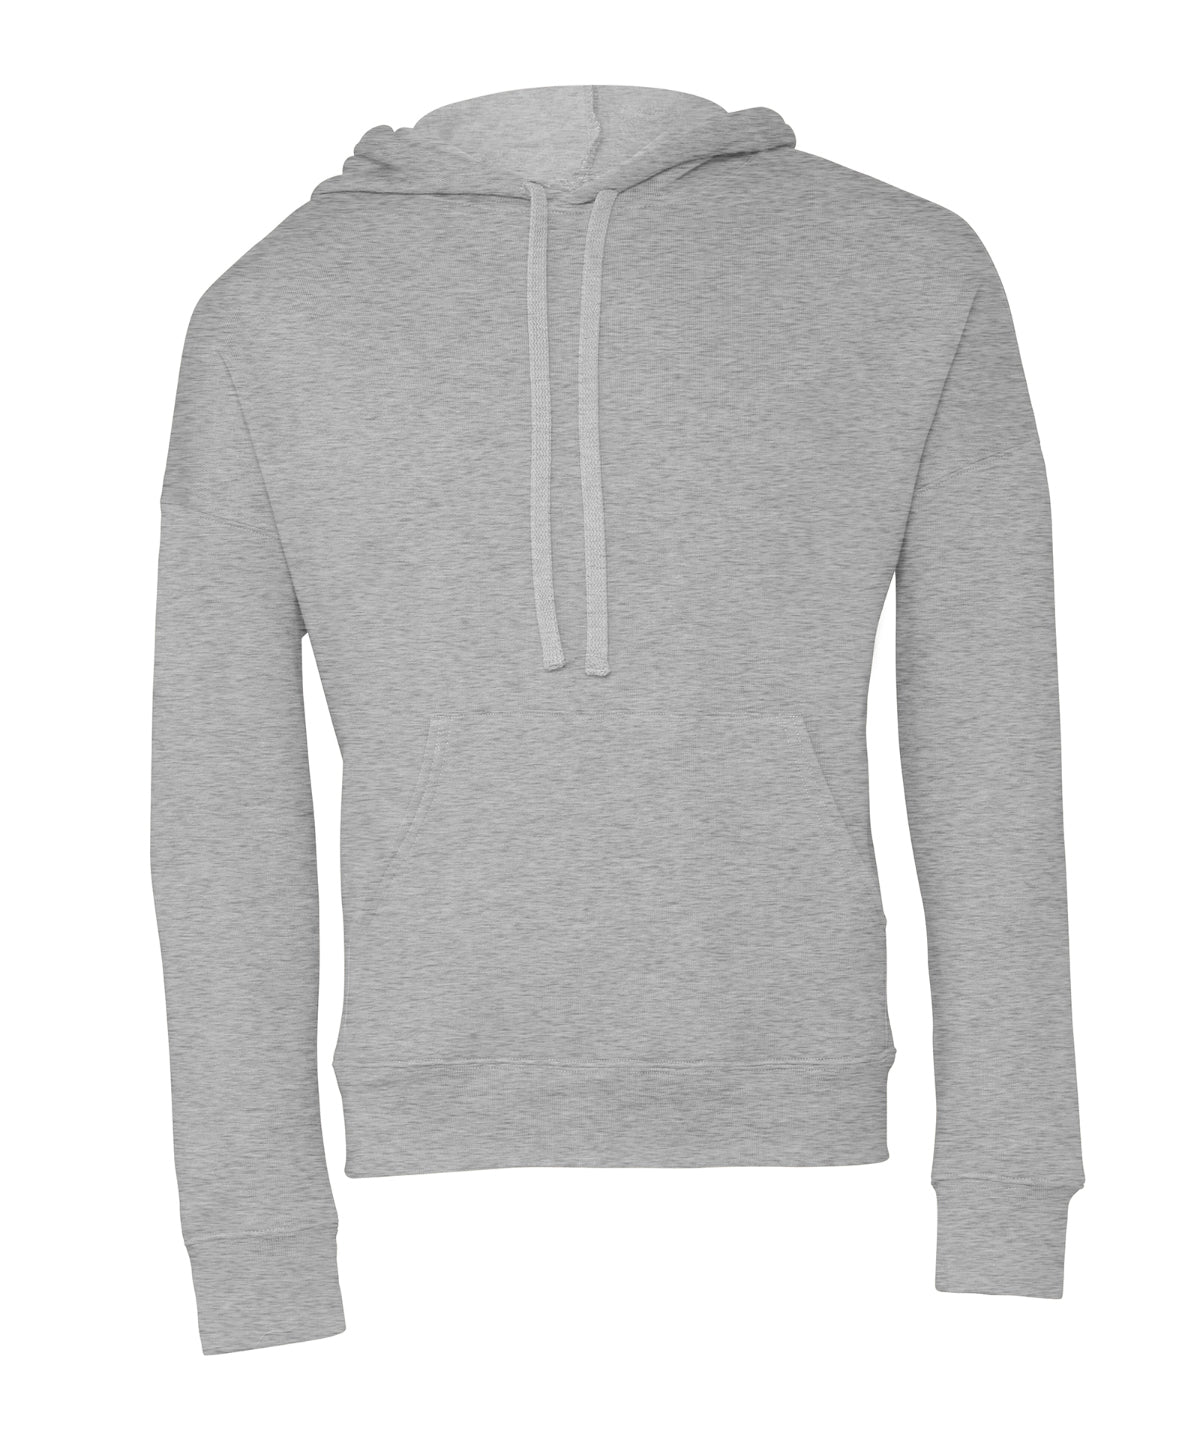 Personalised Hoodies - Heather Grey Bella Canvas Unisex sponge fleece pullover DTM hoodie